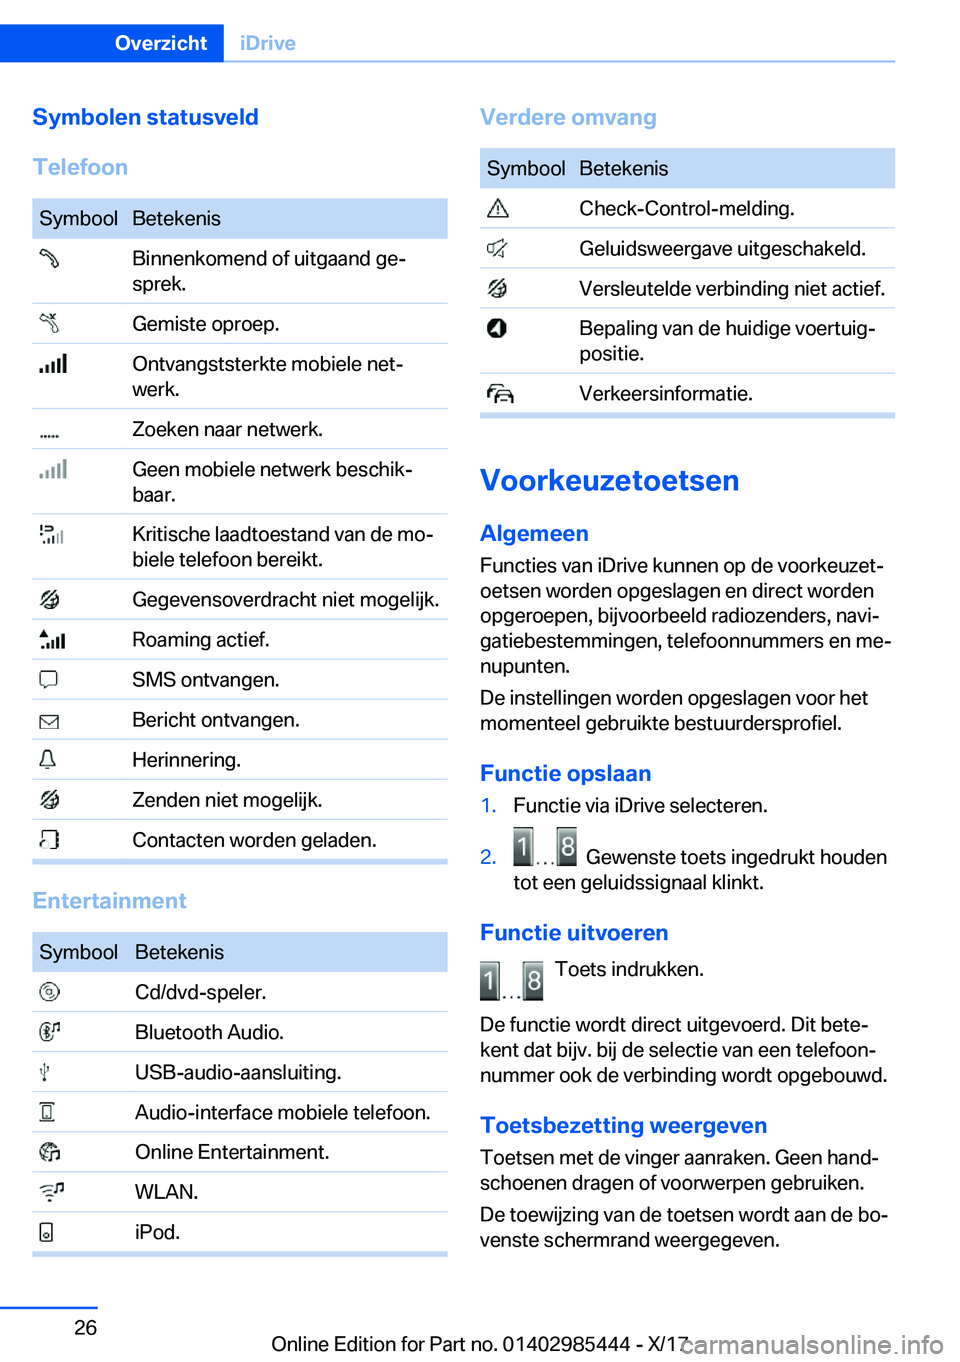 BMW X1 2018  Instructieboekjes (in Dutch) �S�y�m�b�o�l�e�n��s�t�a�t�u�s�v�e�l�d
�T�e�l�e�f�o�o�n�S�y�m�b�o�o�l�B�e�t�e�k�e�n�i�s� �B�i�n�n�e�n�k�o�m�e�n�d� �o�f� �u�i�t�g�a�a�n�d� �g�ej
�s�p�r�e�k�.� �G�e�m�i�s�t�e� �o�p�r�o�e�p�.� �O�n�t�v